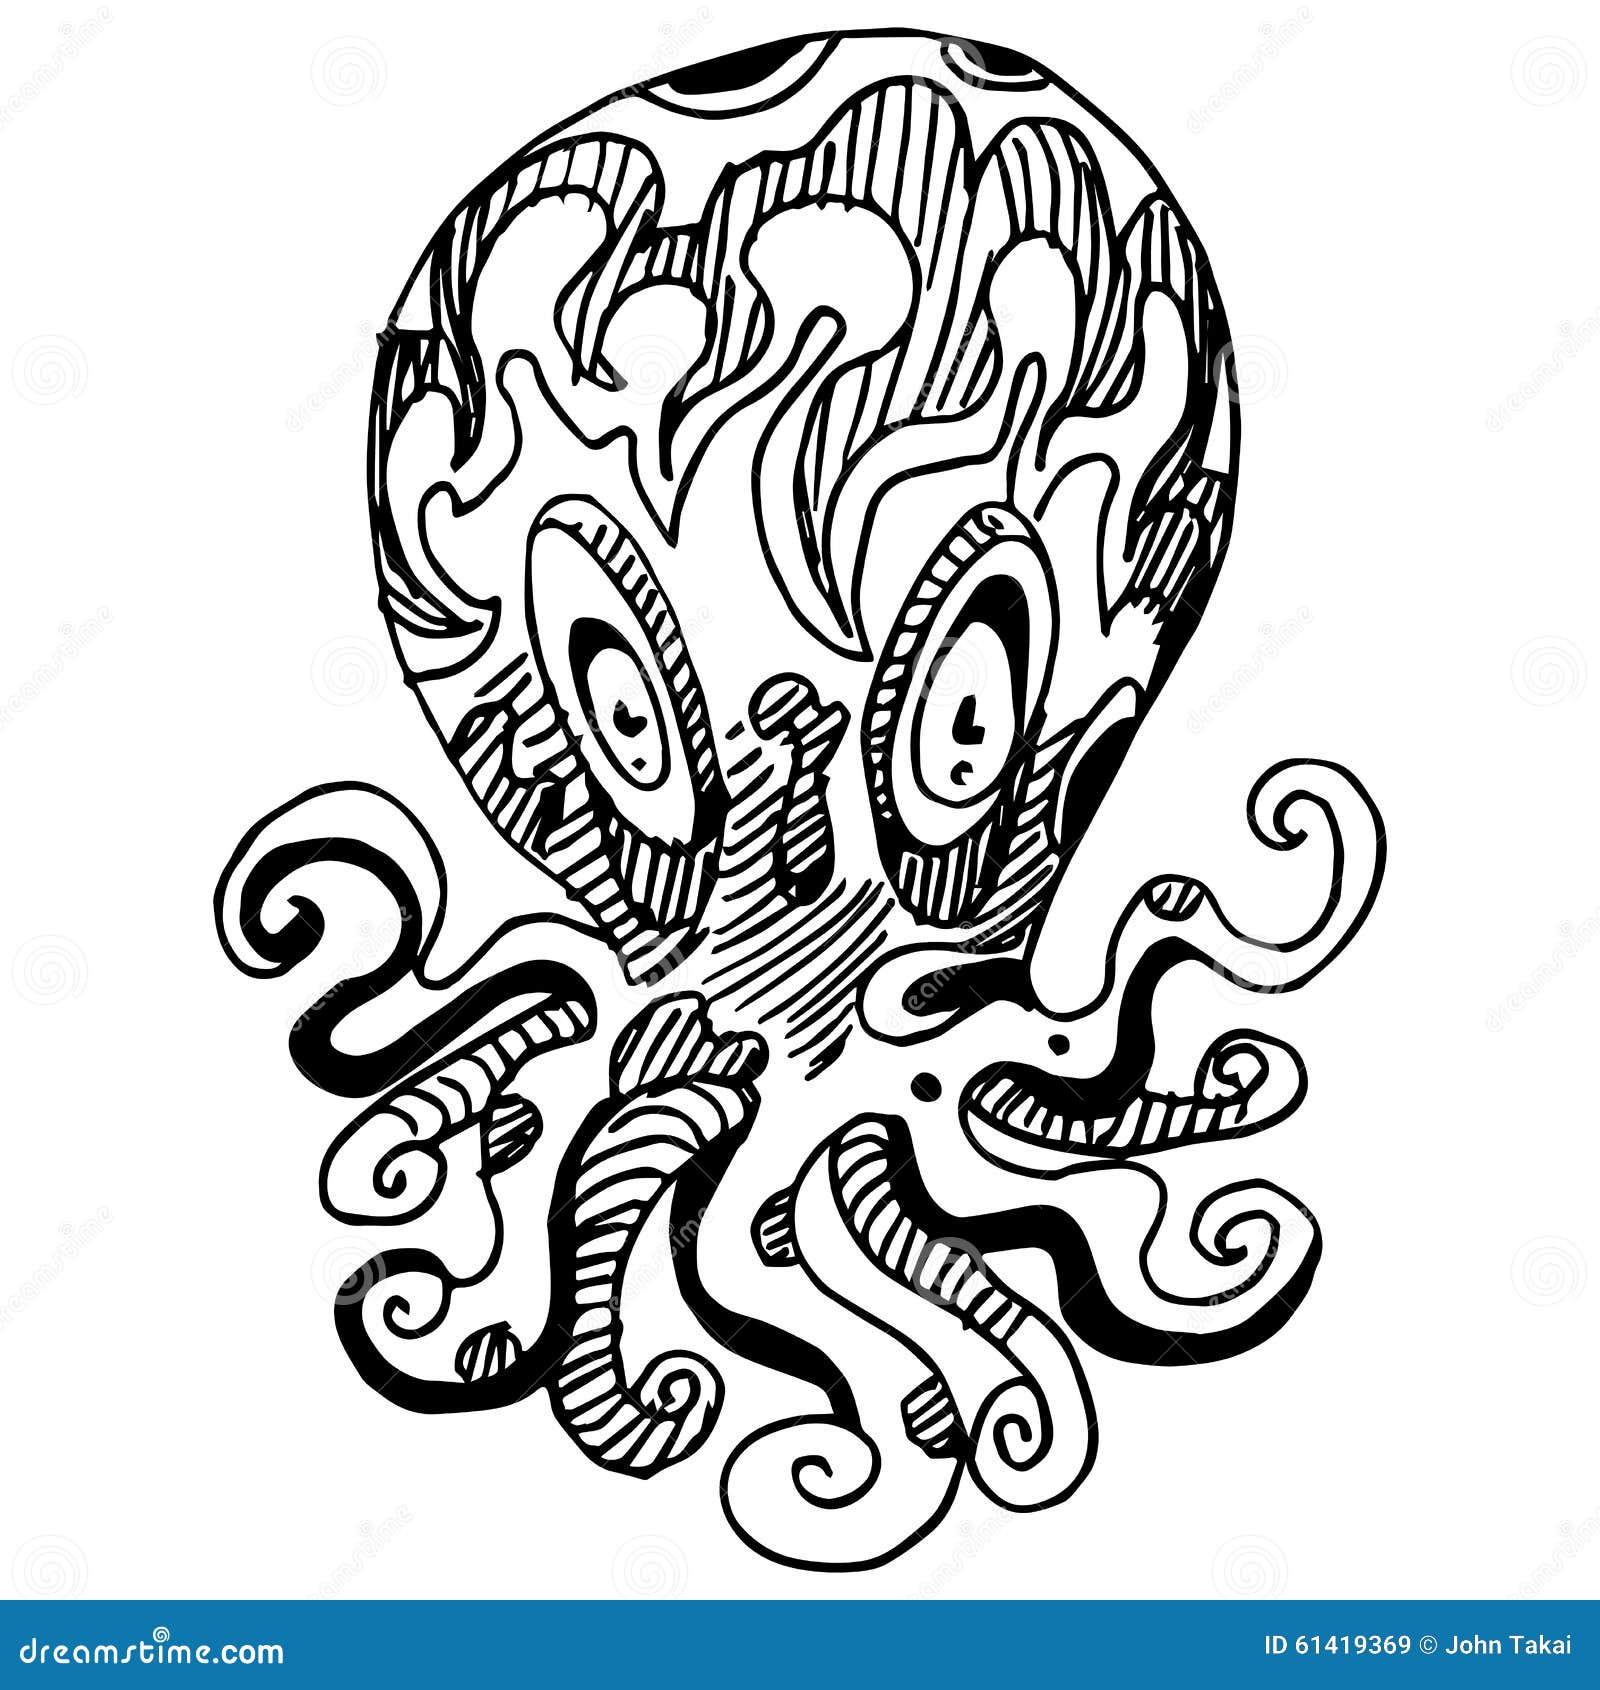 wierd octopus